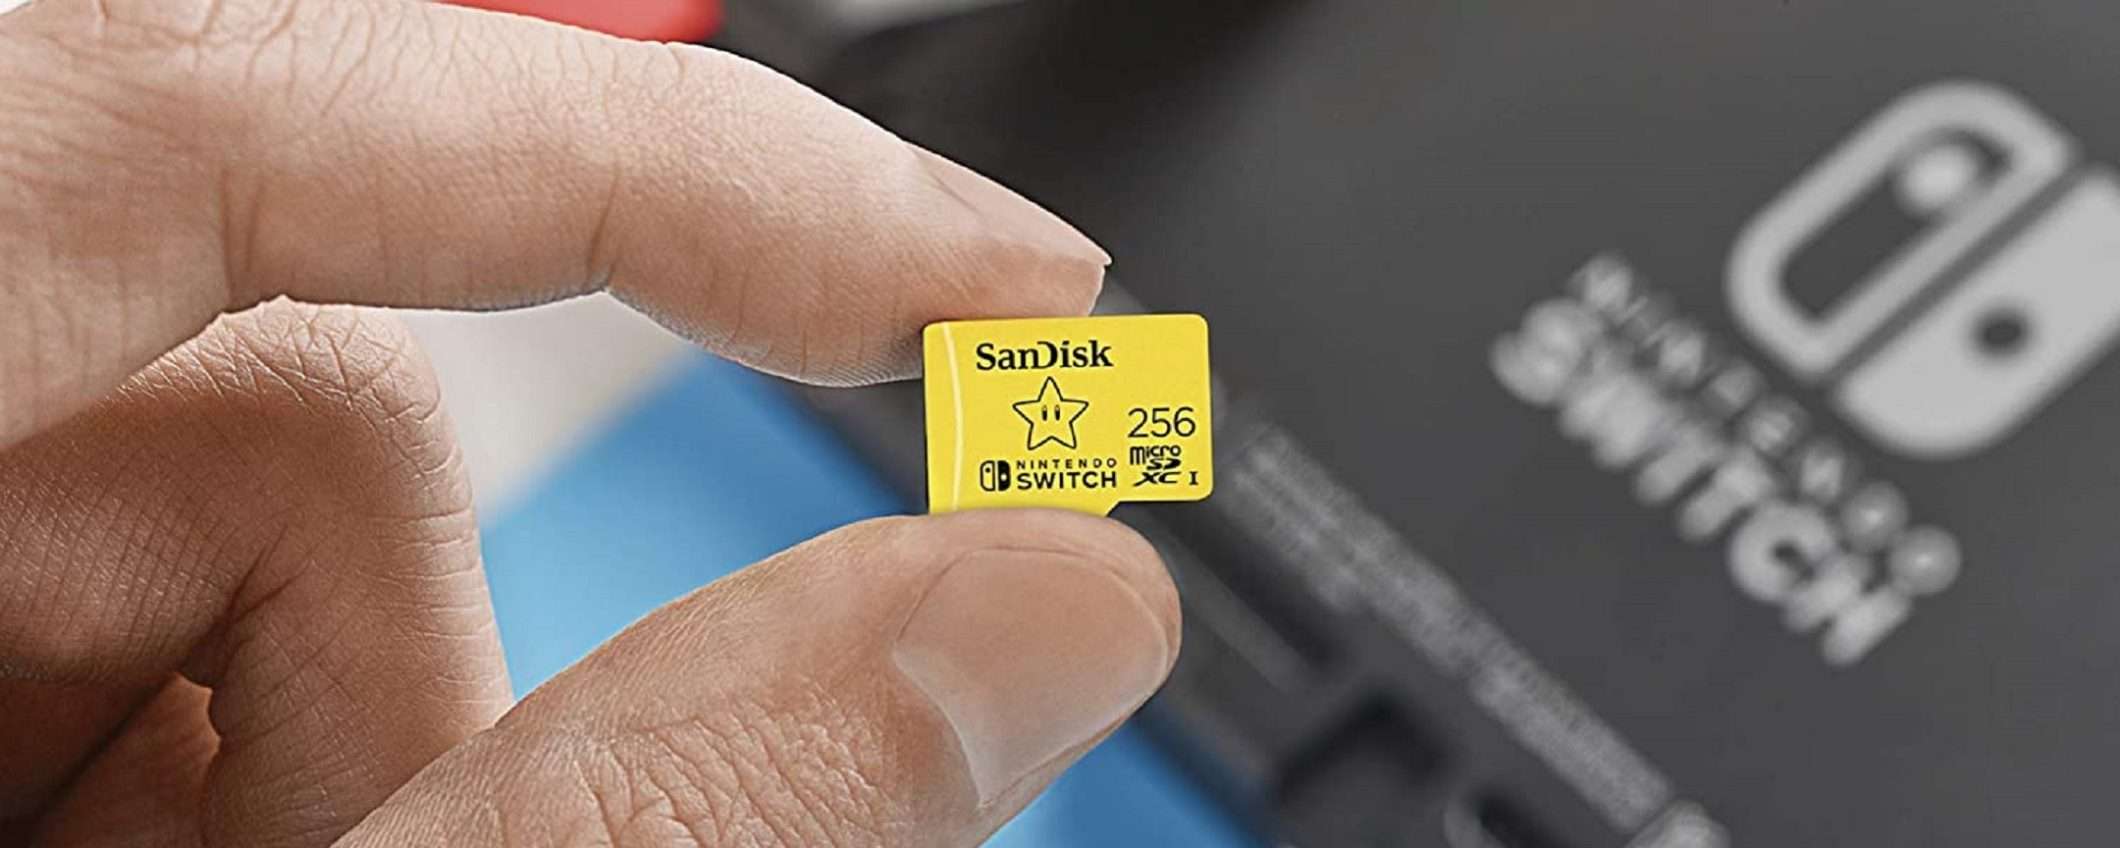 Scheda SanDisk da 256 GB per Nintendo Switch scontata del 65% (solo 35€)